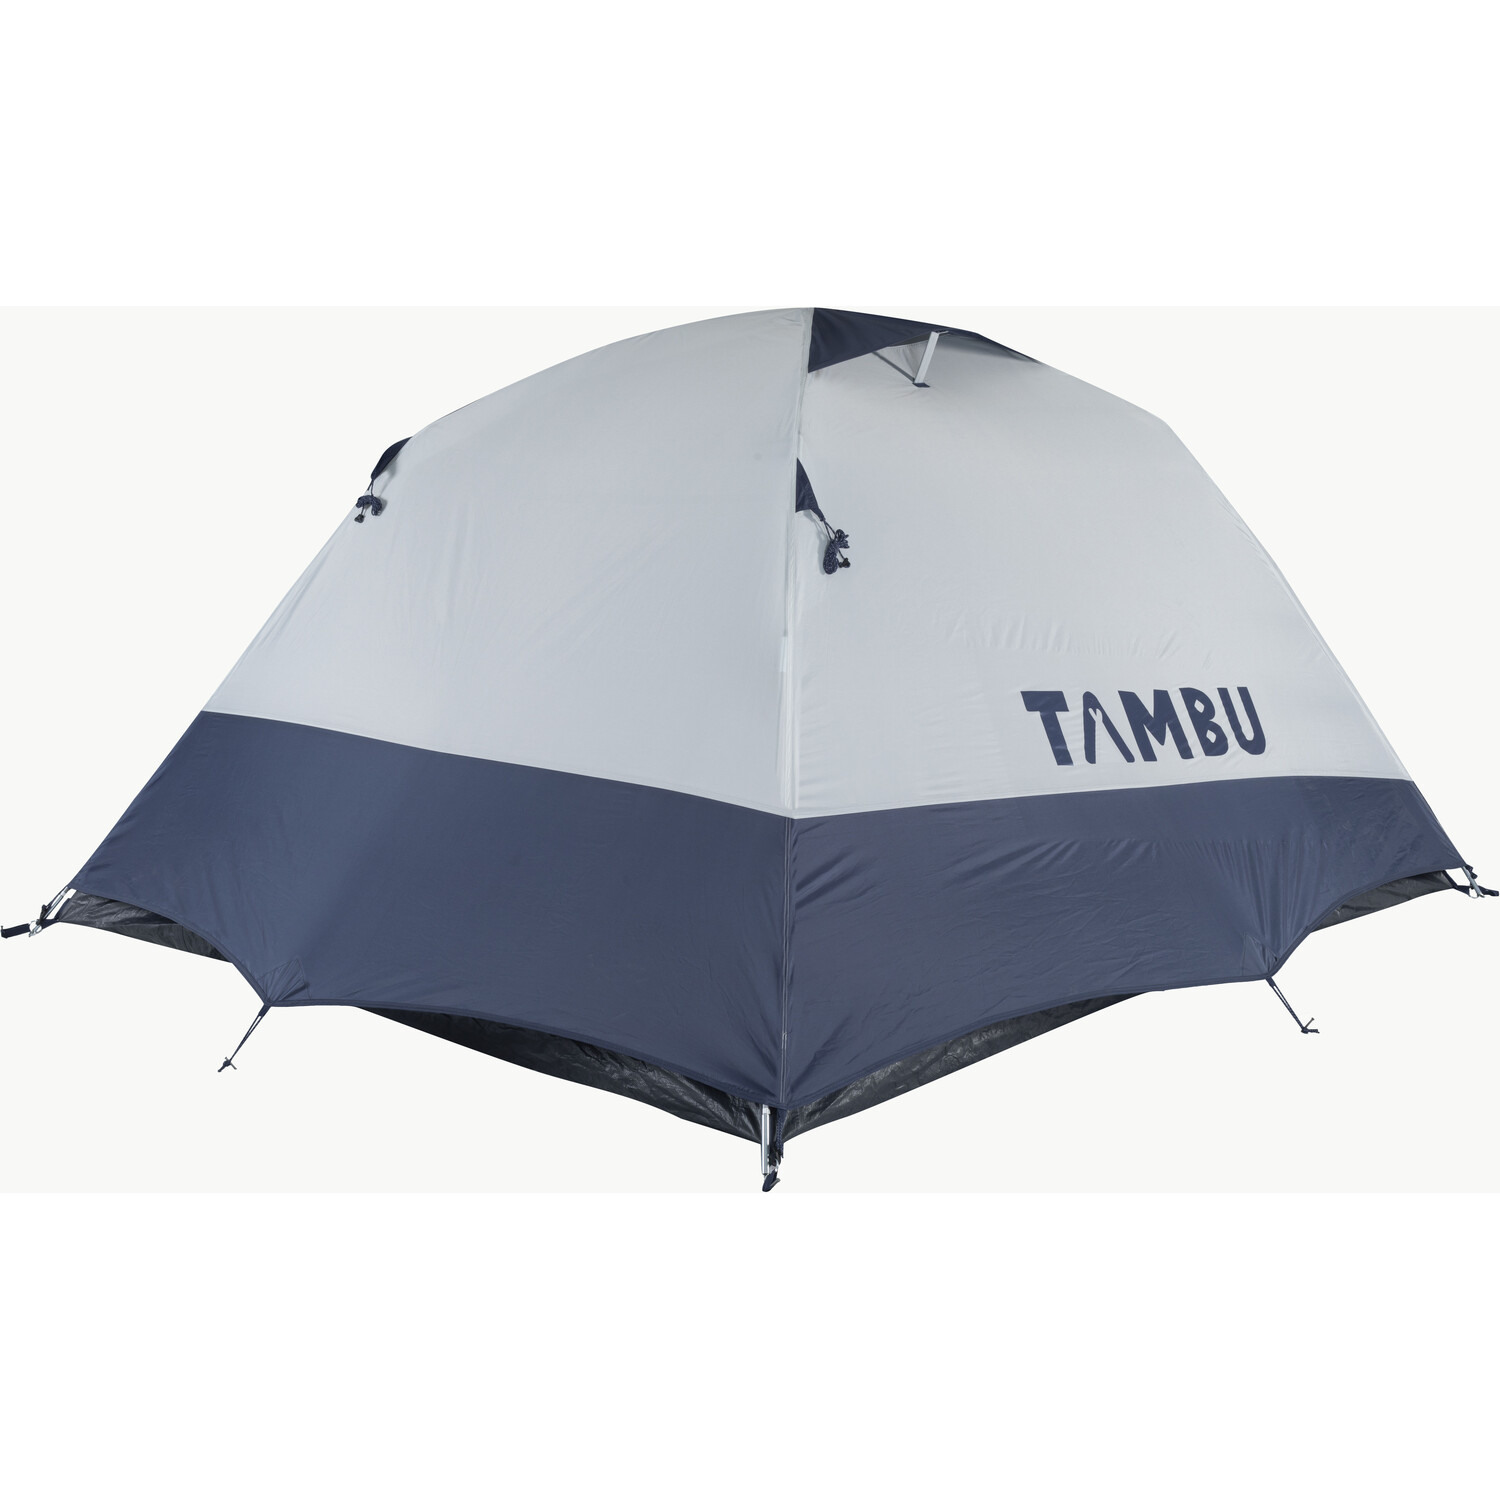 Tambu GAMBUJA Dome Tent - Three Image 6